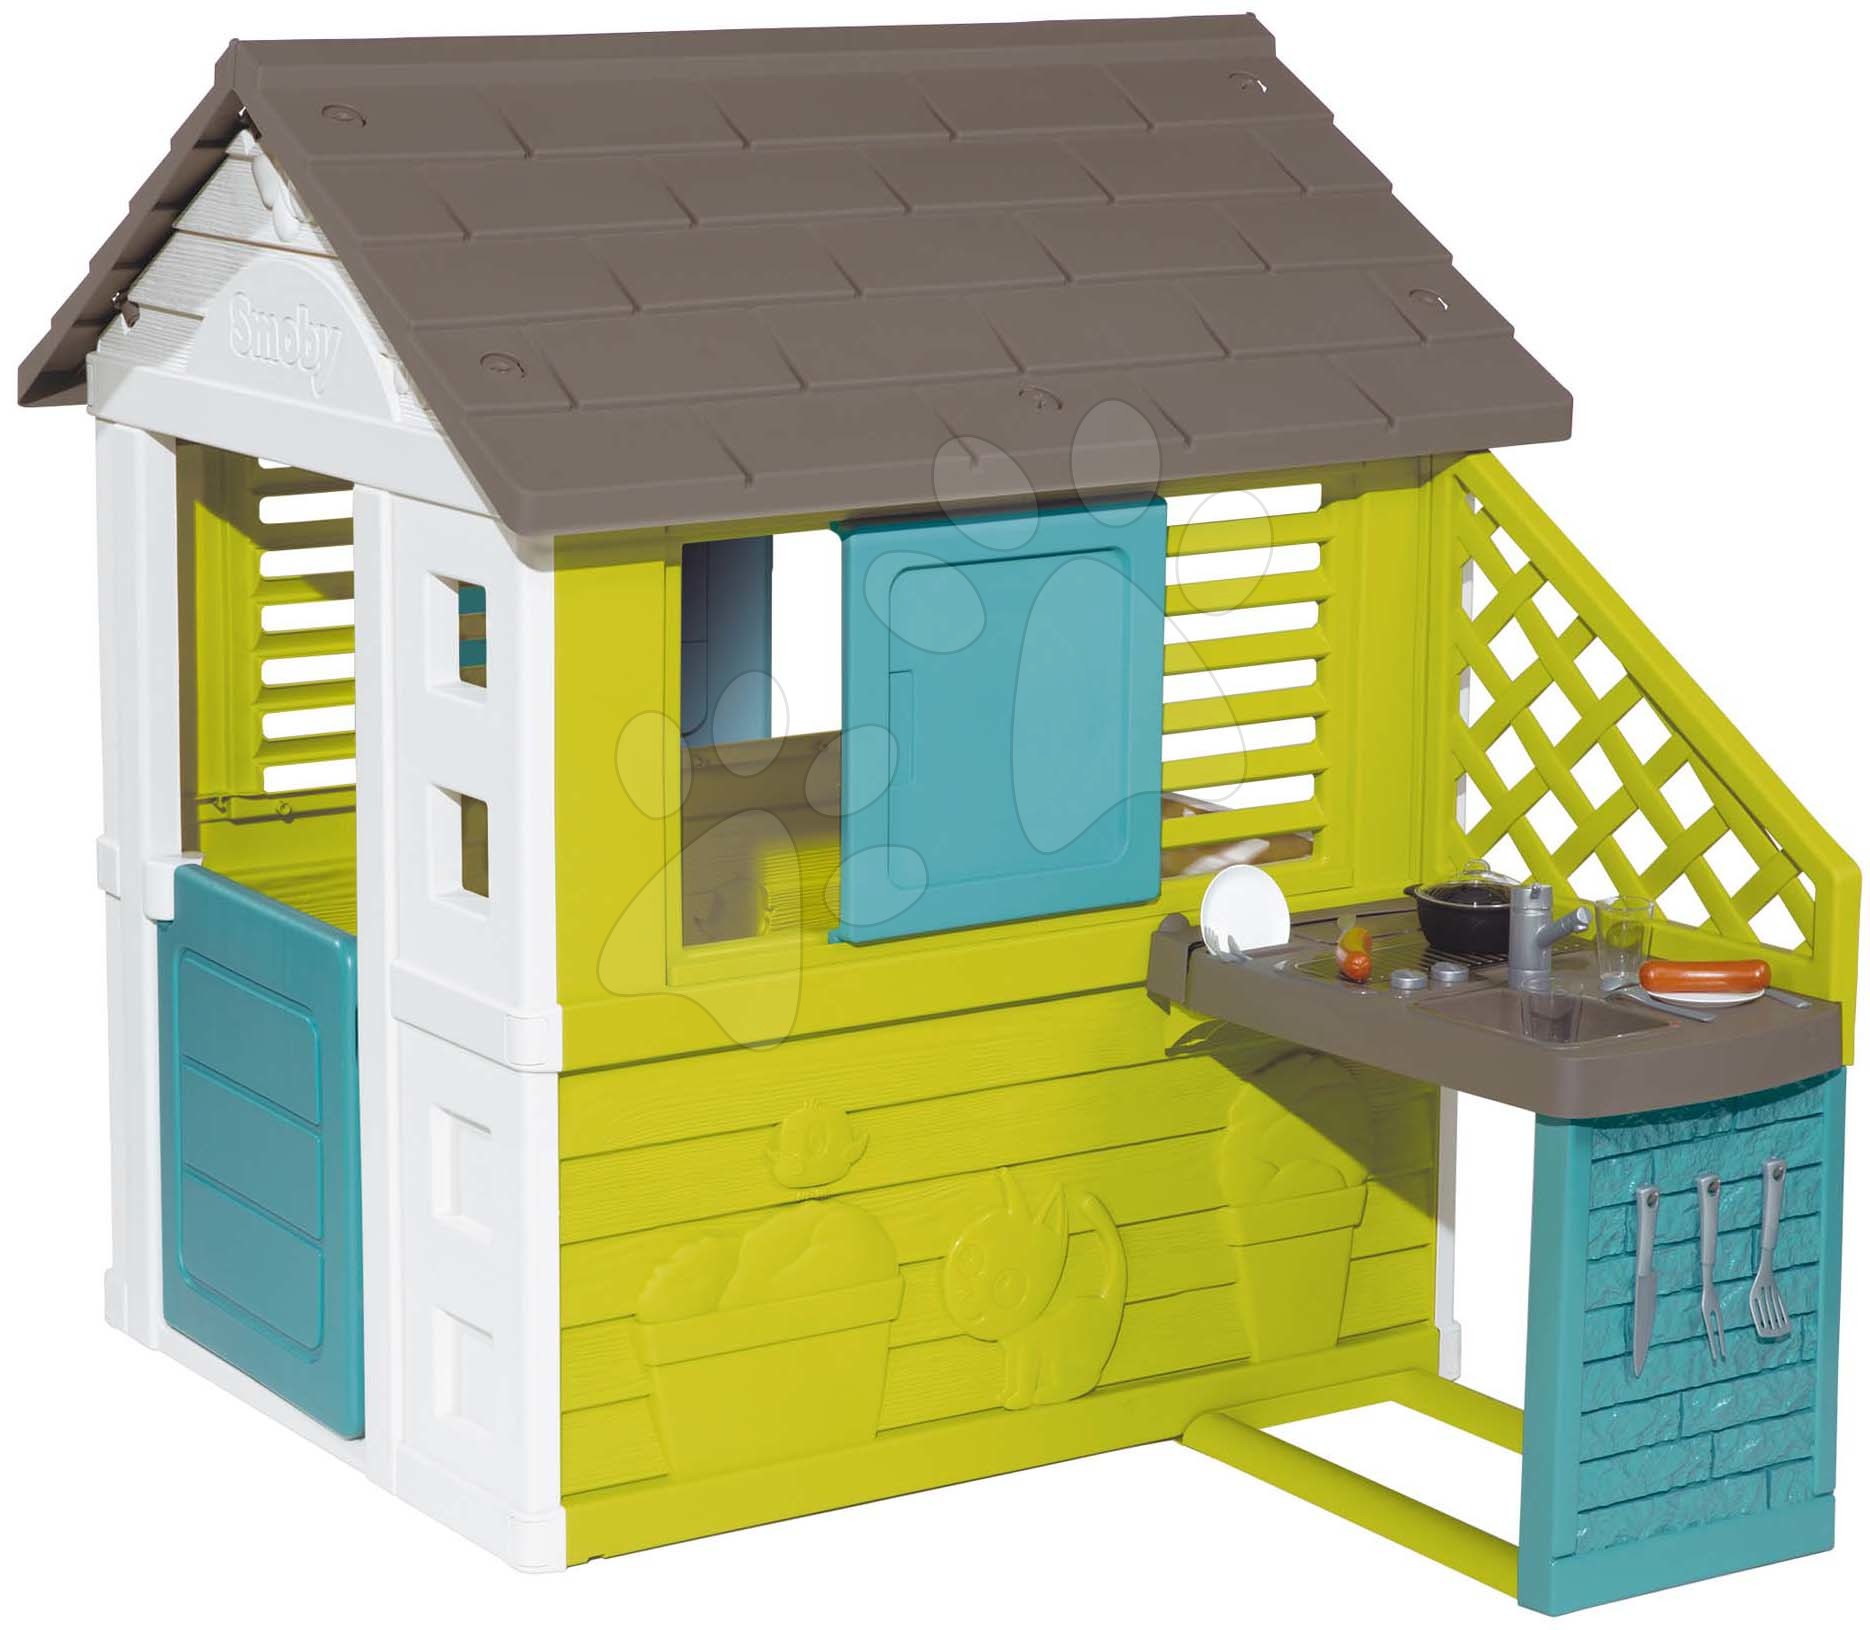 Kerti játszóházak gyerekeknek - Házikó konyhácskával Pretty New Grey Playhouse&Kitchen Smoby 2 ablak elhúzható zsalugáterekkel és felezett ajtó UV szűrő 2 évtől